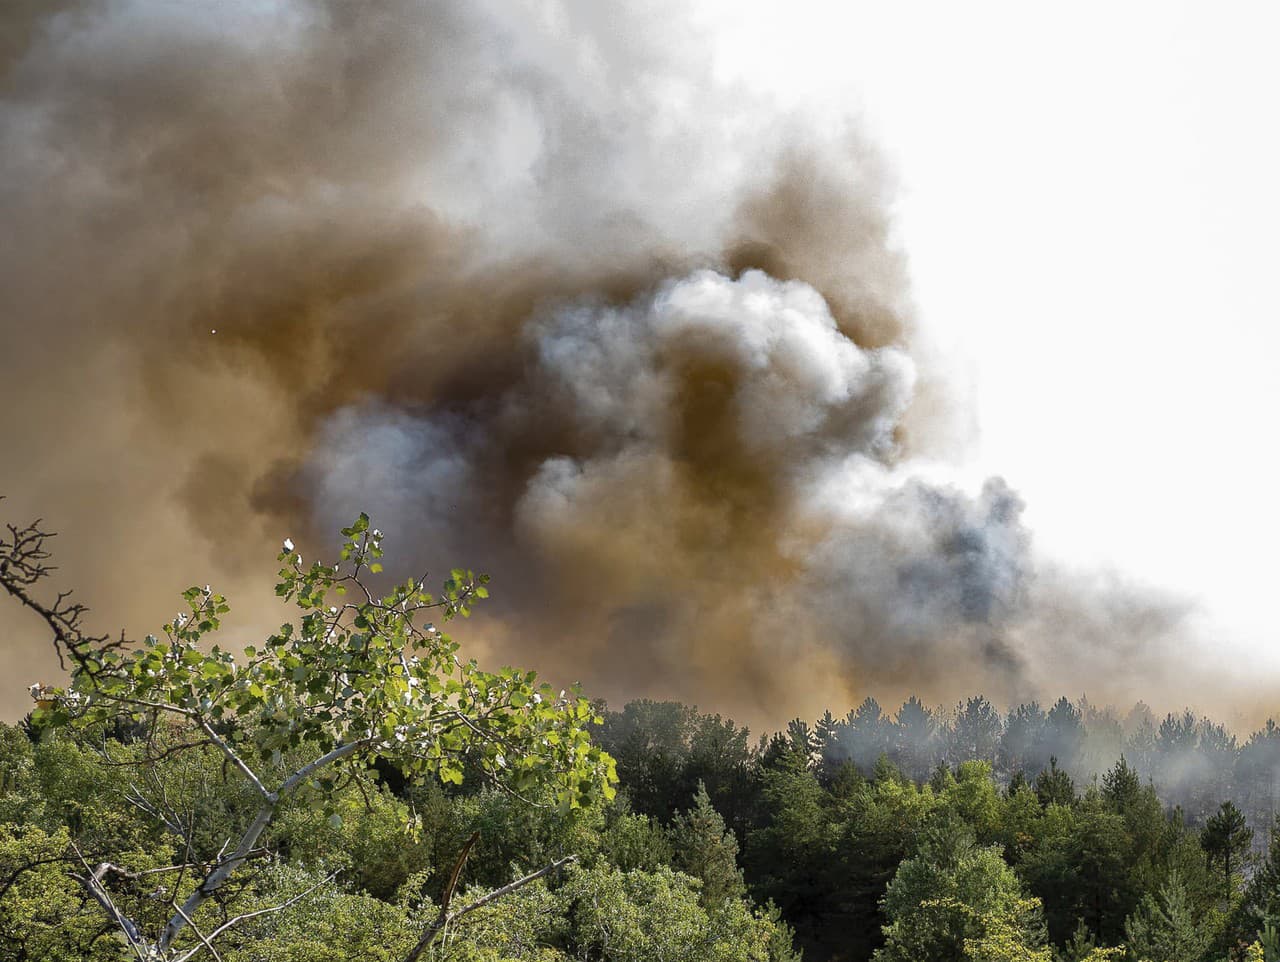 Vplyvom sucha a horúčav vzniká v Maďarsku denne v priemere sto požiarov v lesoch, na lúkach a poliach.